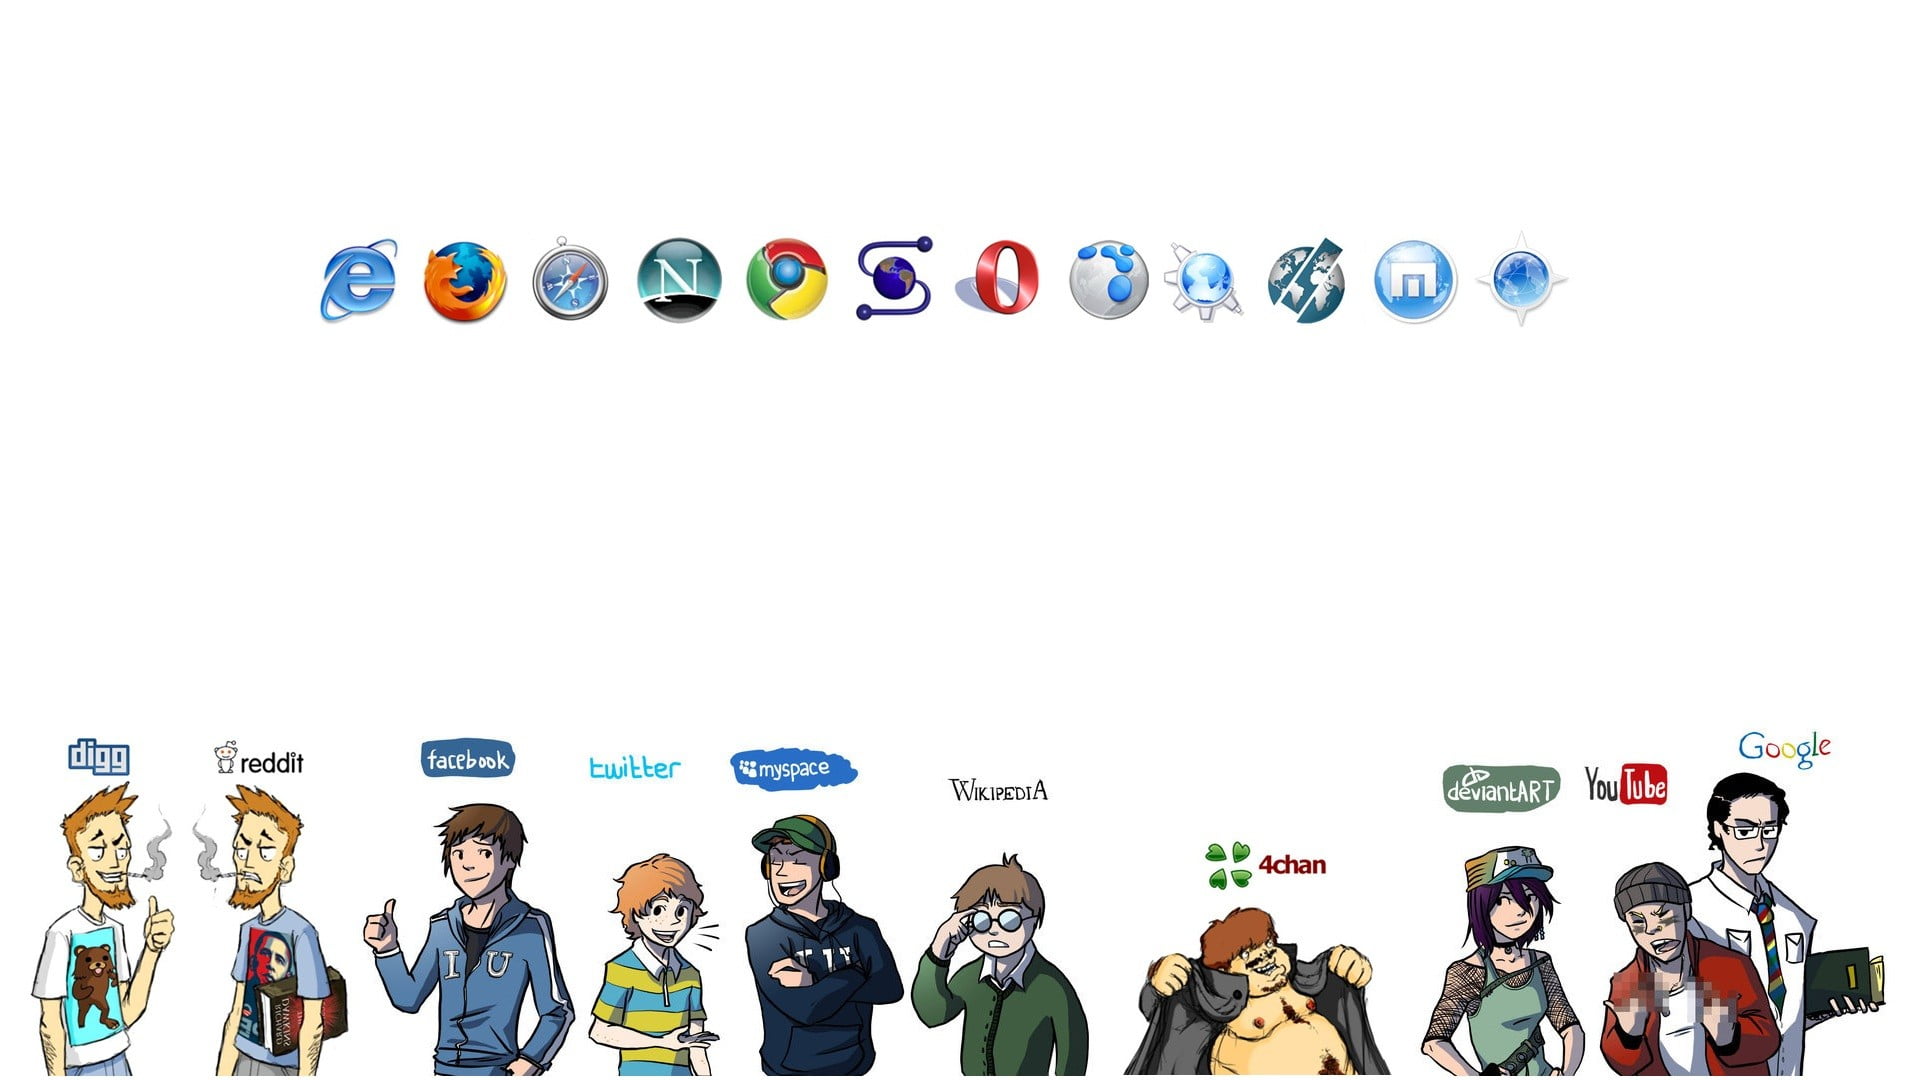 social media logo lot, reddit, Facebook, Twitter, MySpace, 4chan